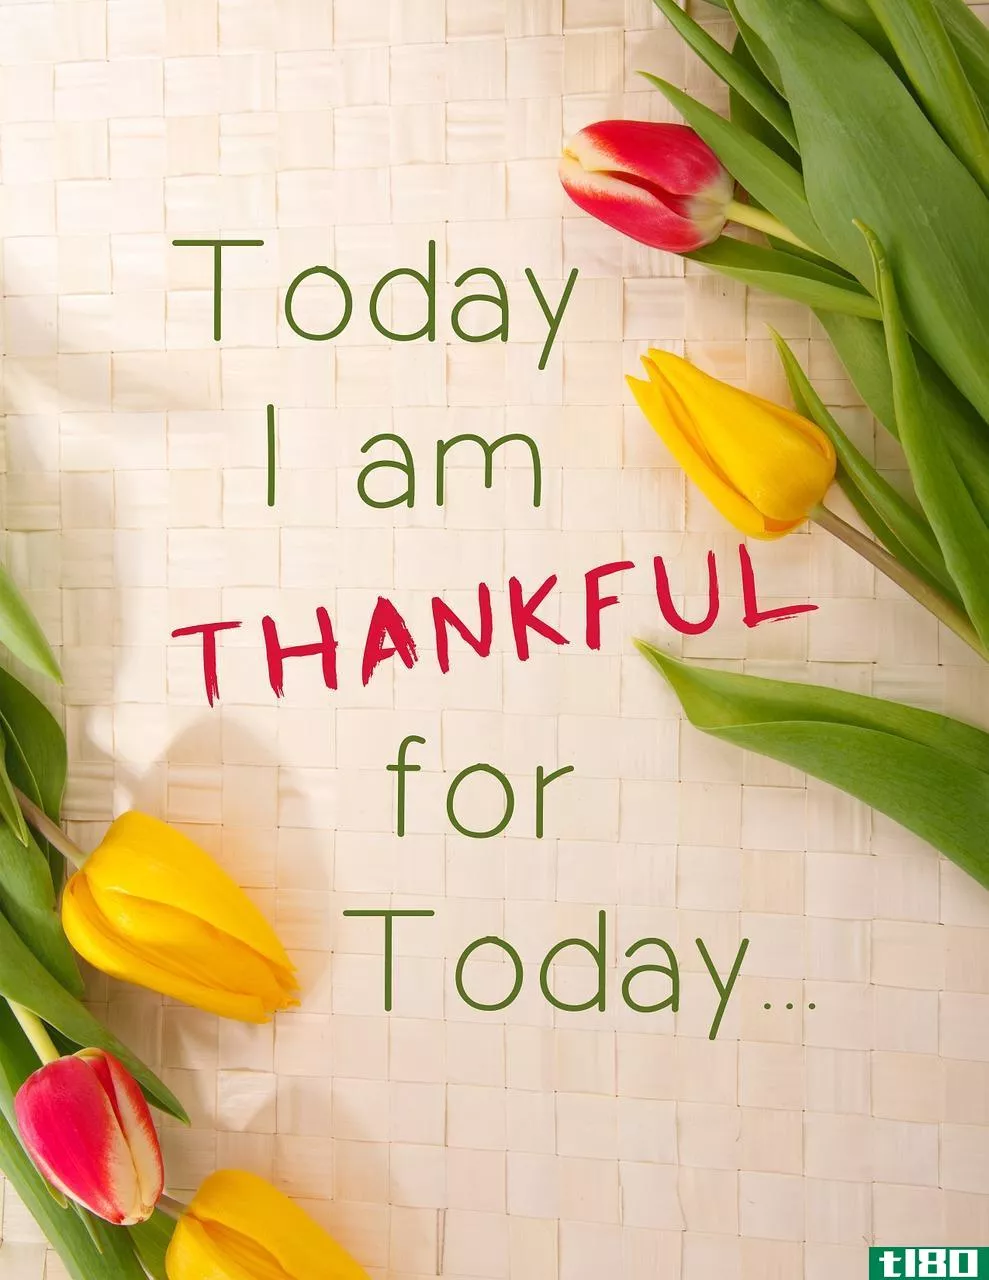 感激的(grateful)和感激的(thankful)的区别